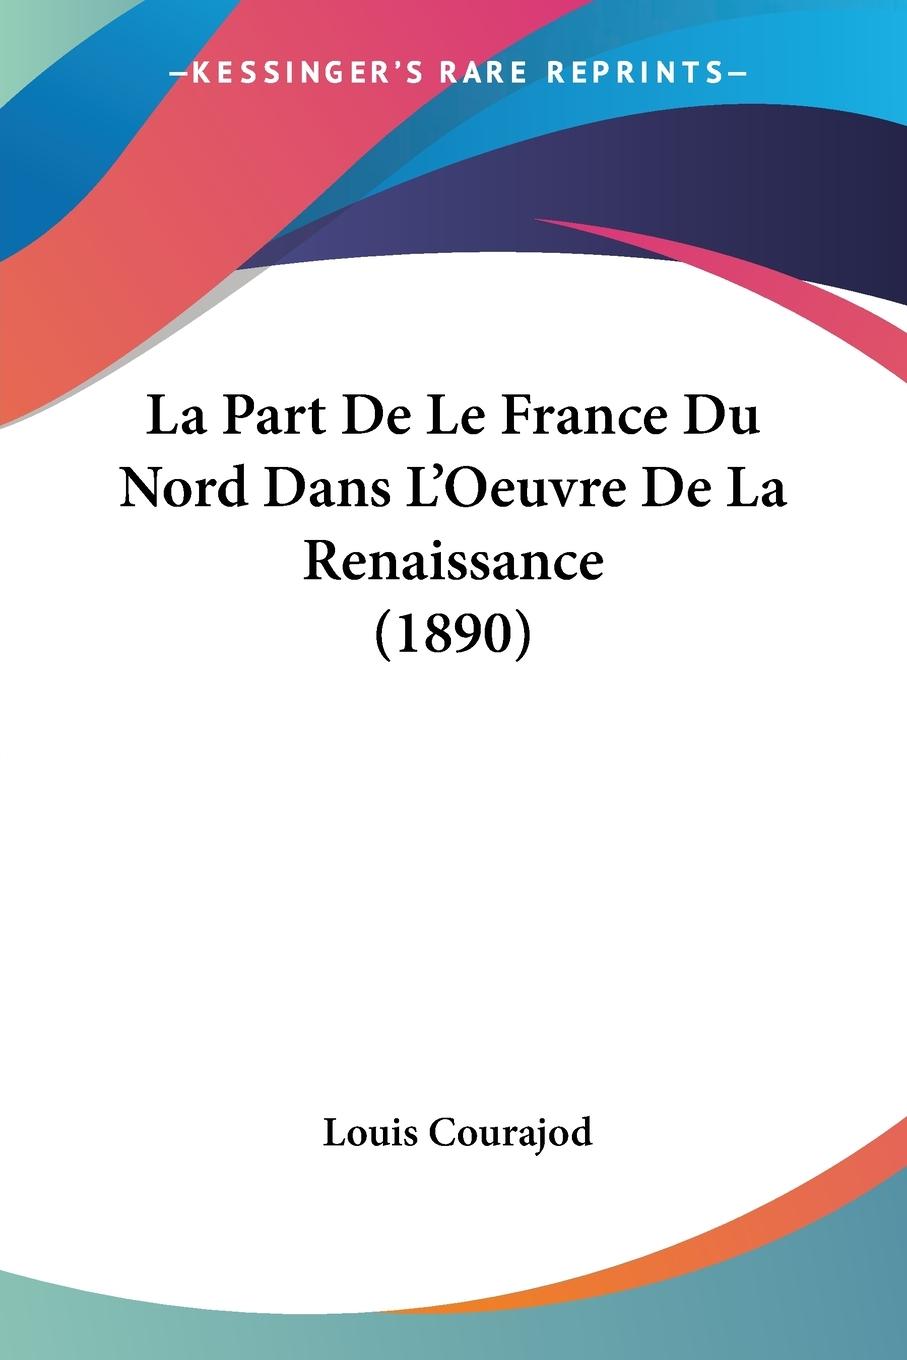 La Part De Le France Du Nord Dans L Oeuvre De La Renaissance (1890) - Courajod, Louis